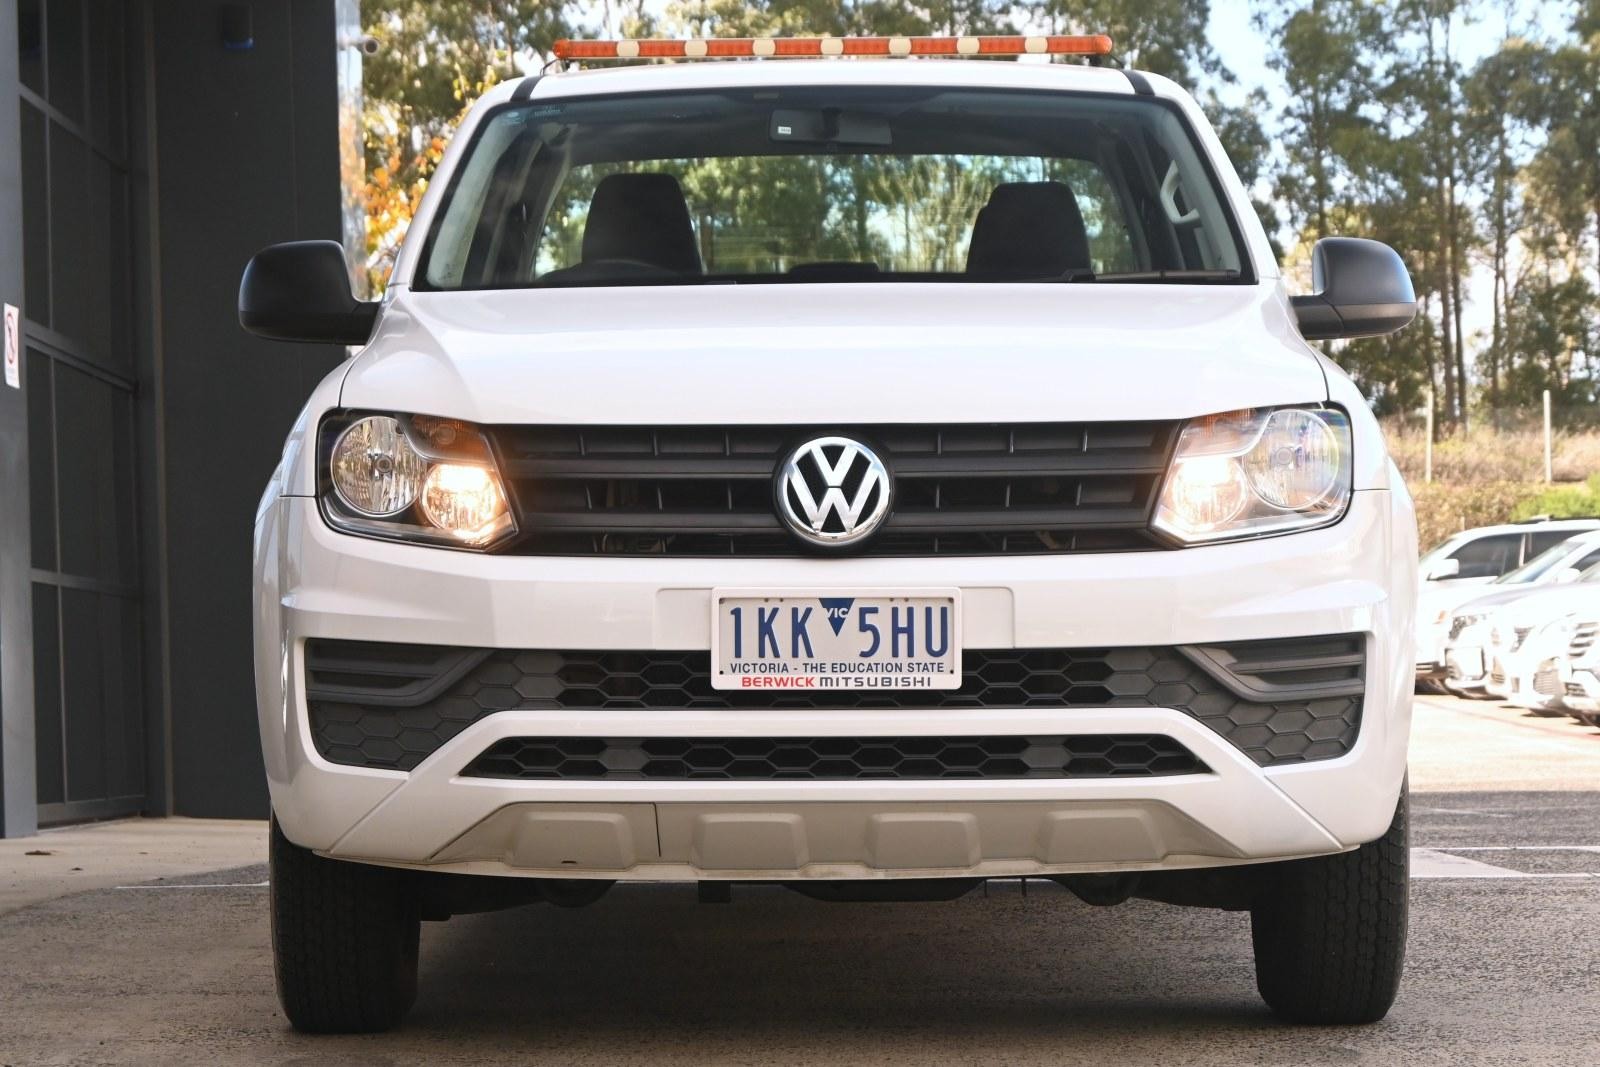 Volkswagen Amarok image 2